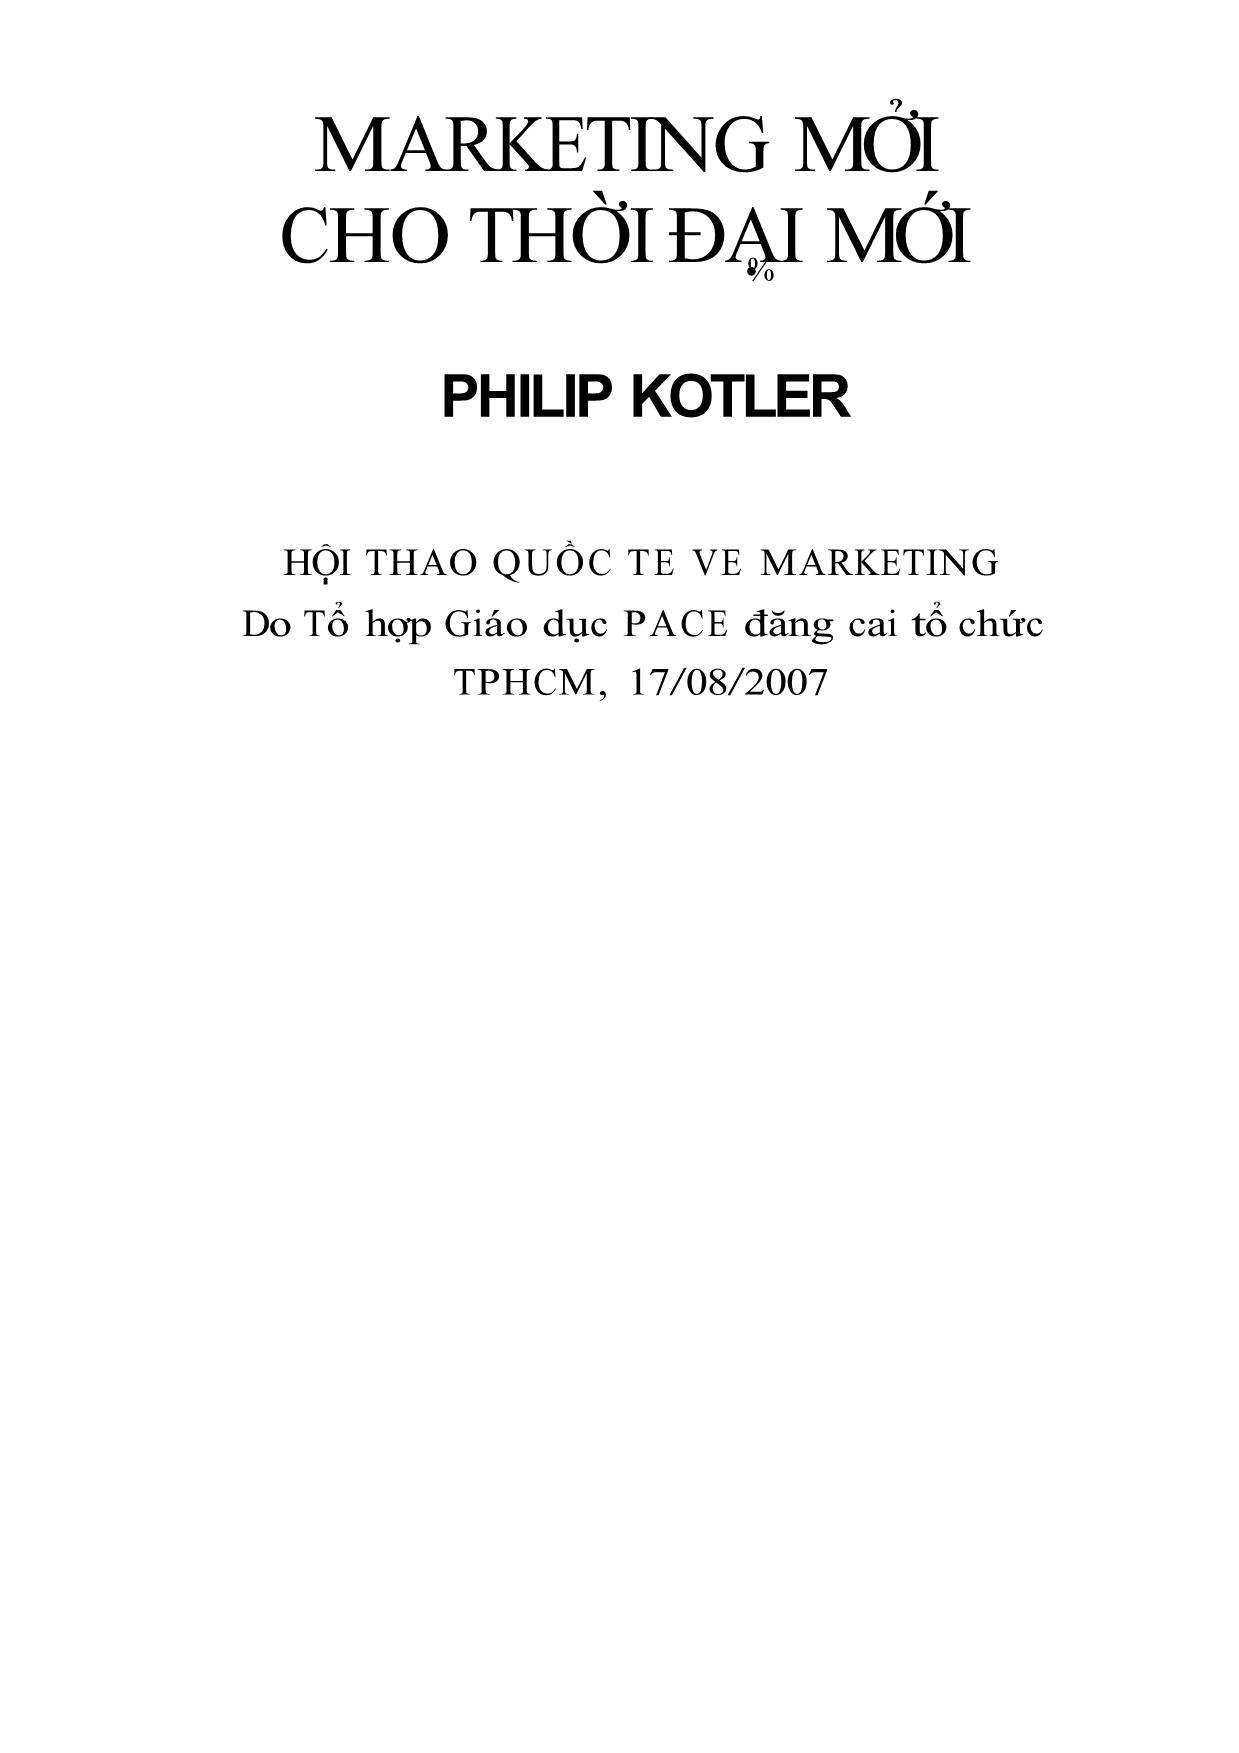 Marketing mới cho thời đại mới - Philip Kotler trang 1